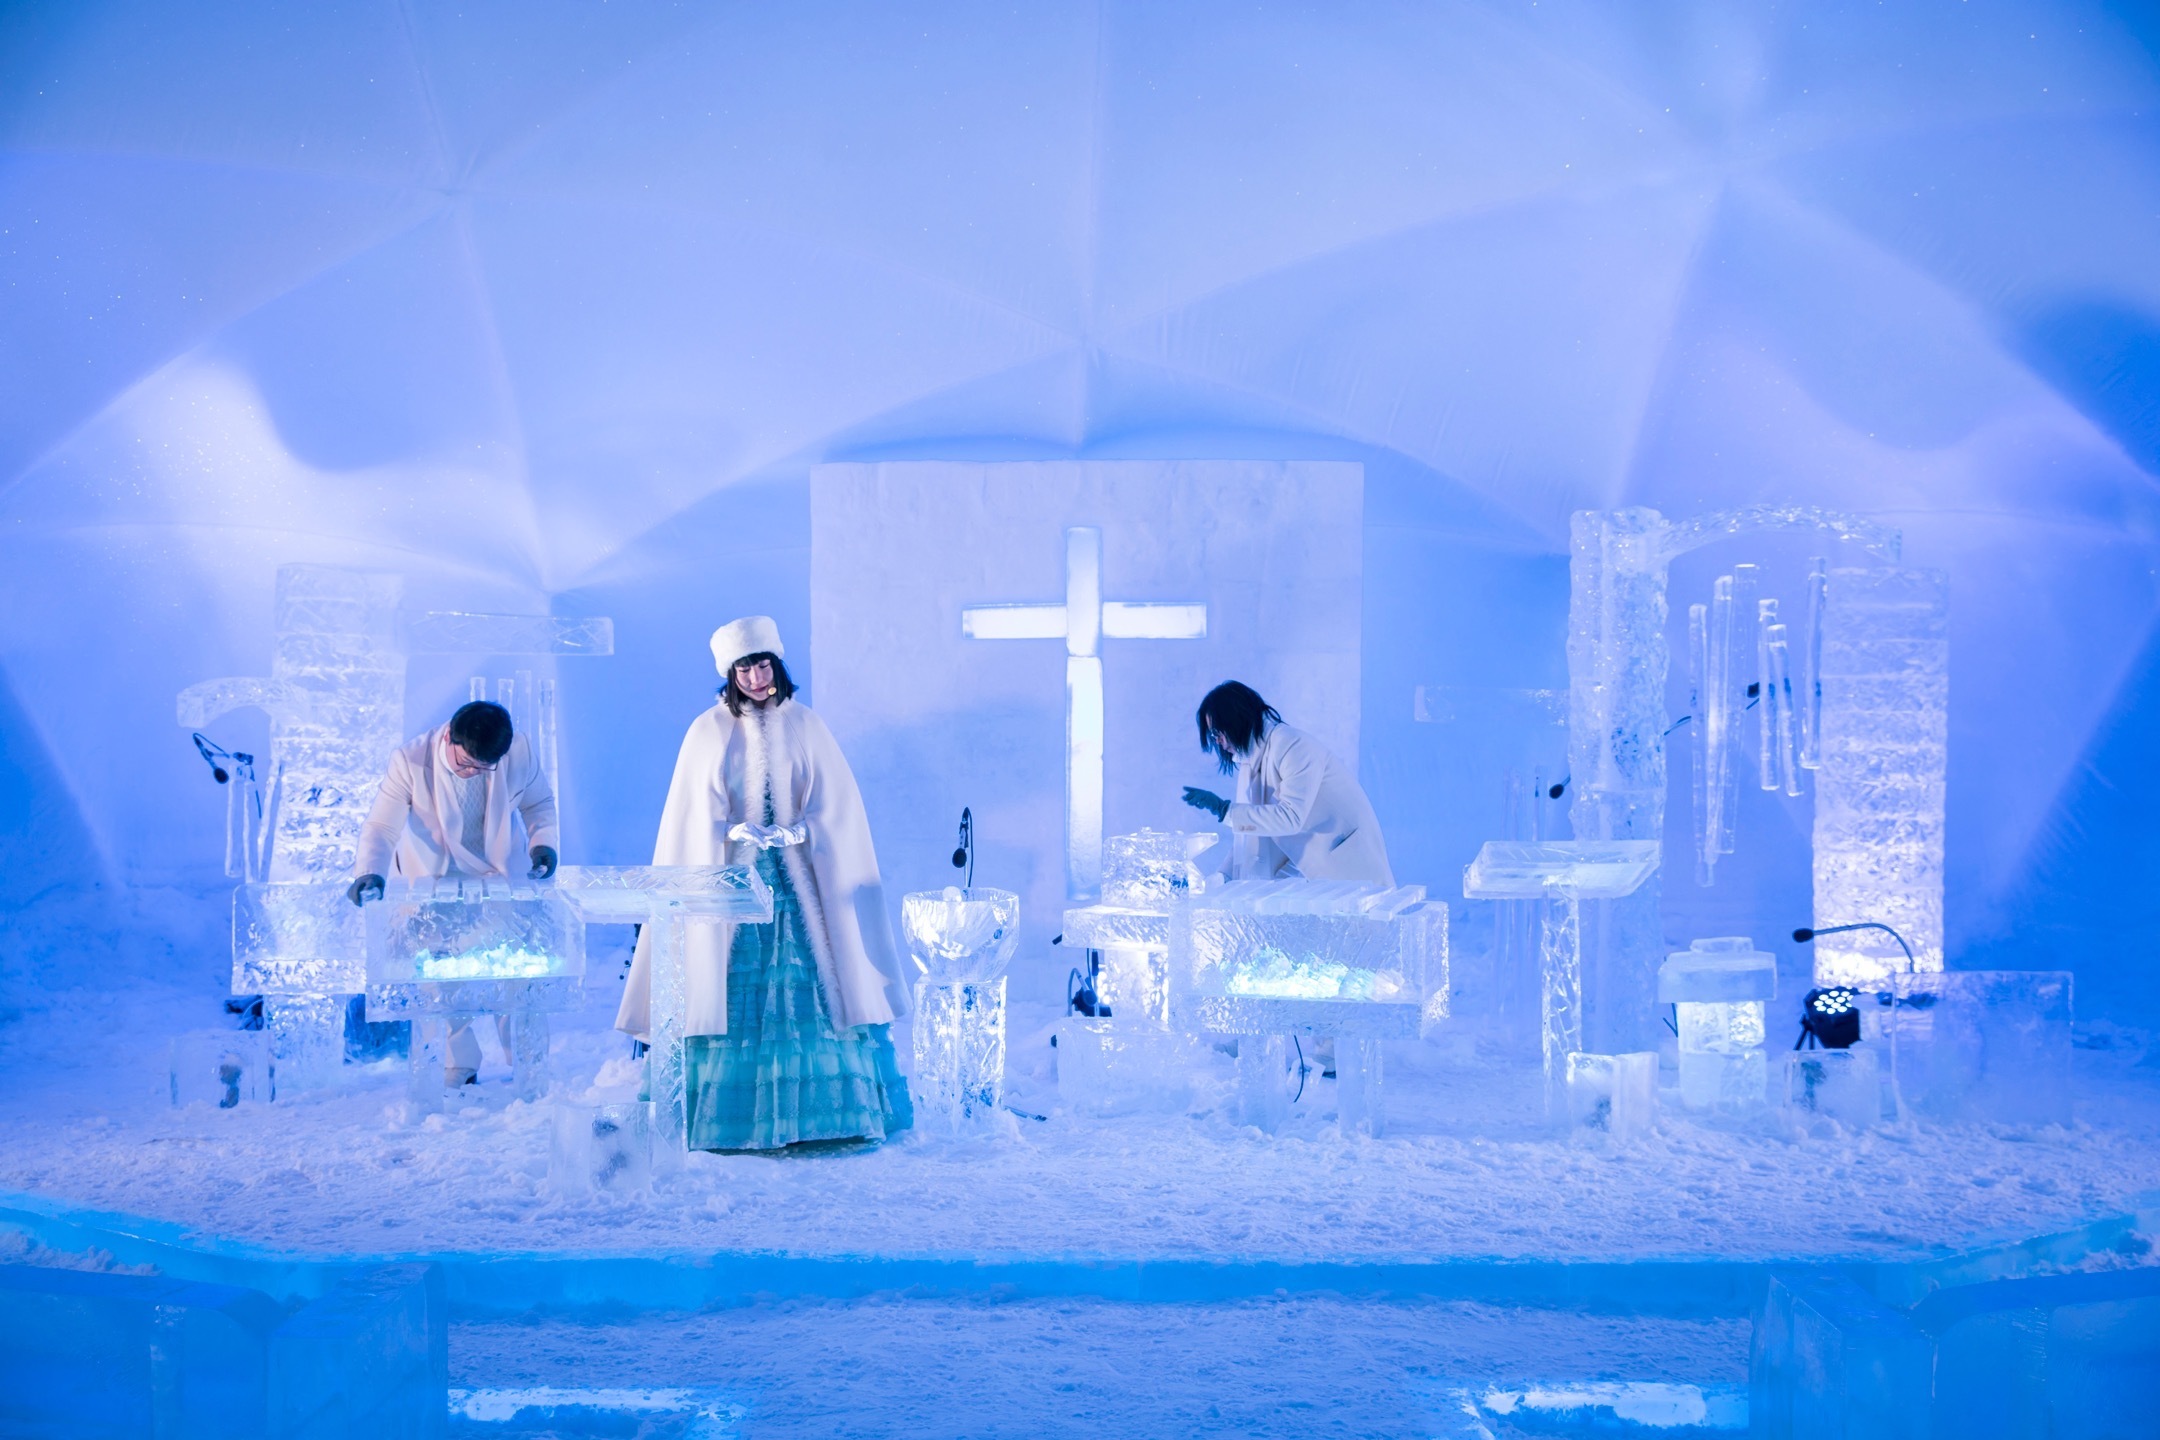 星野リゾートトマム 氷の楽器で奏でる 氷のコンサート を2月17日に開催 観光経済新聞